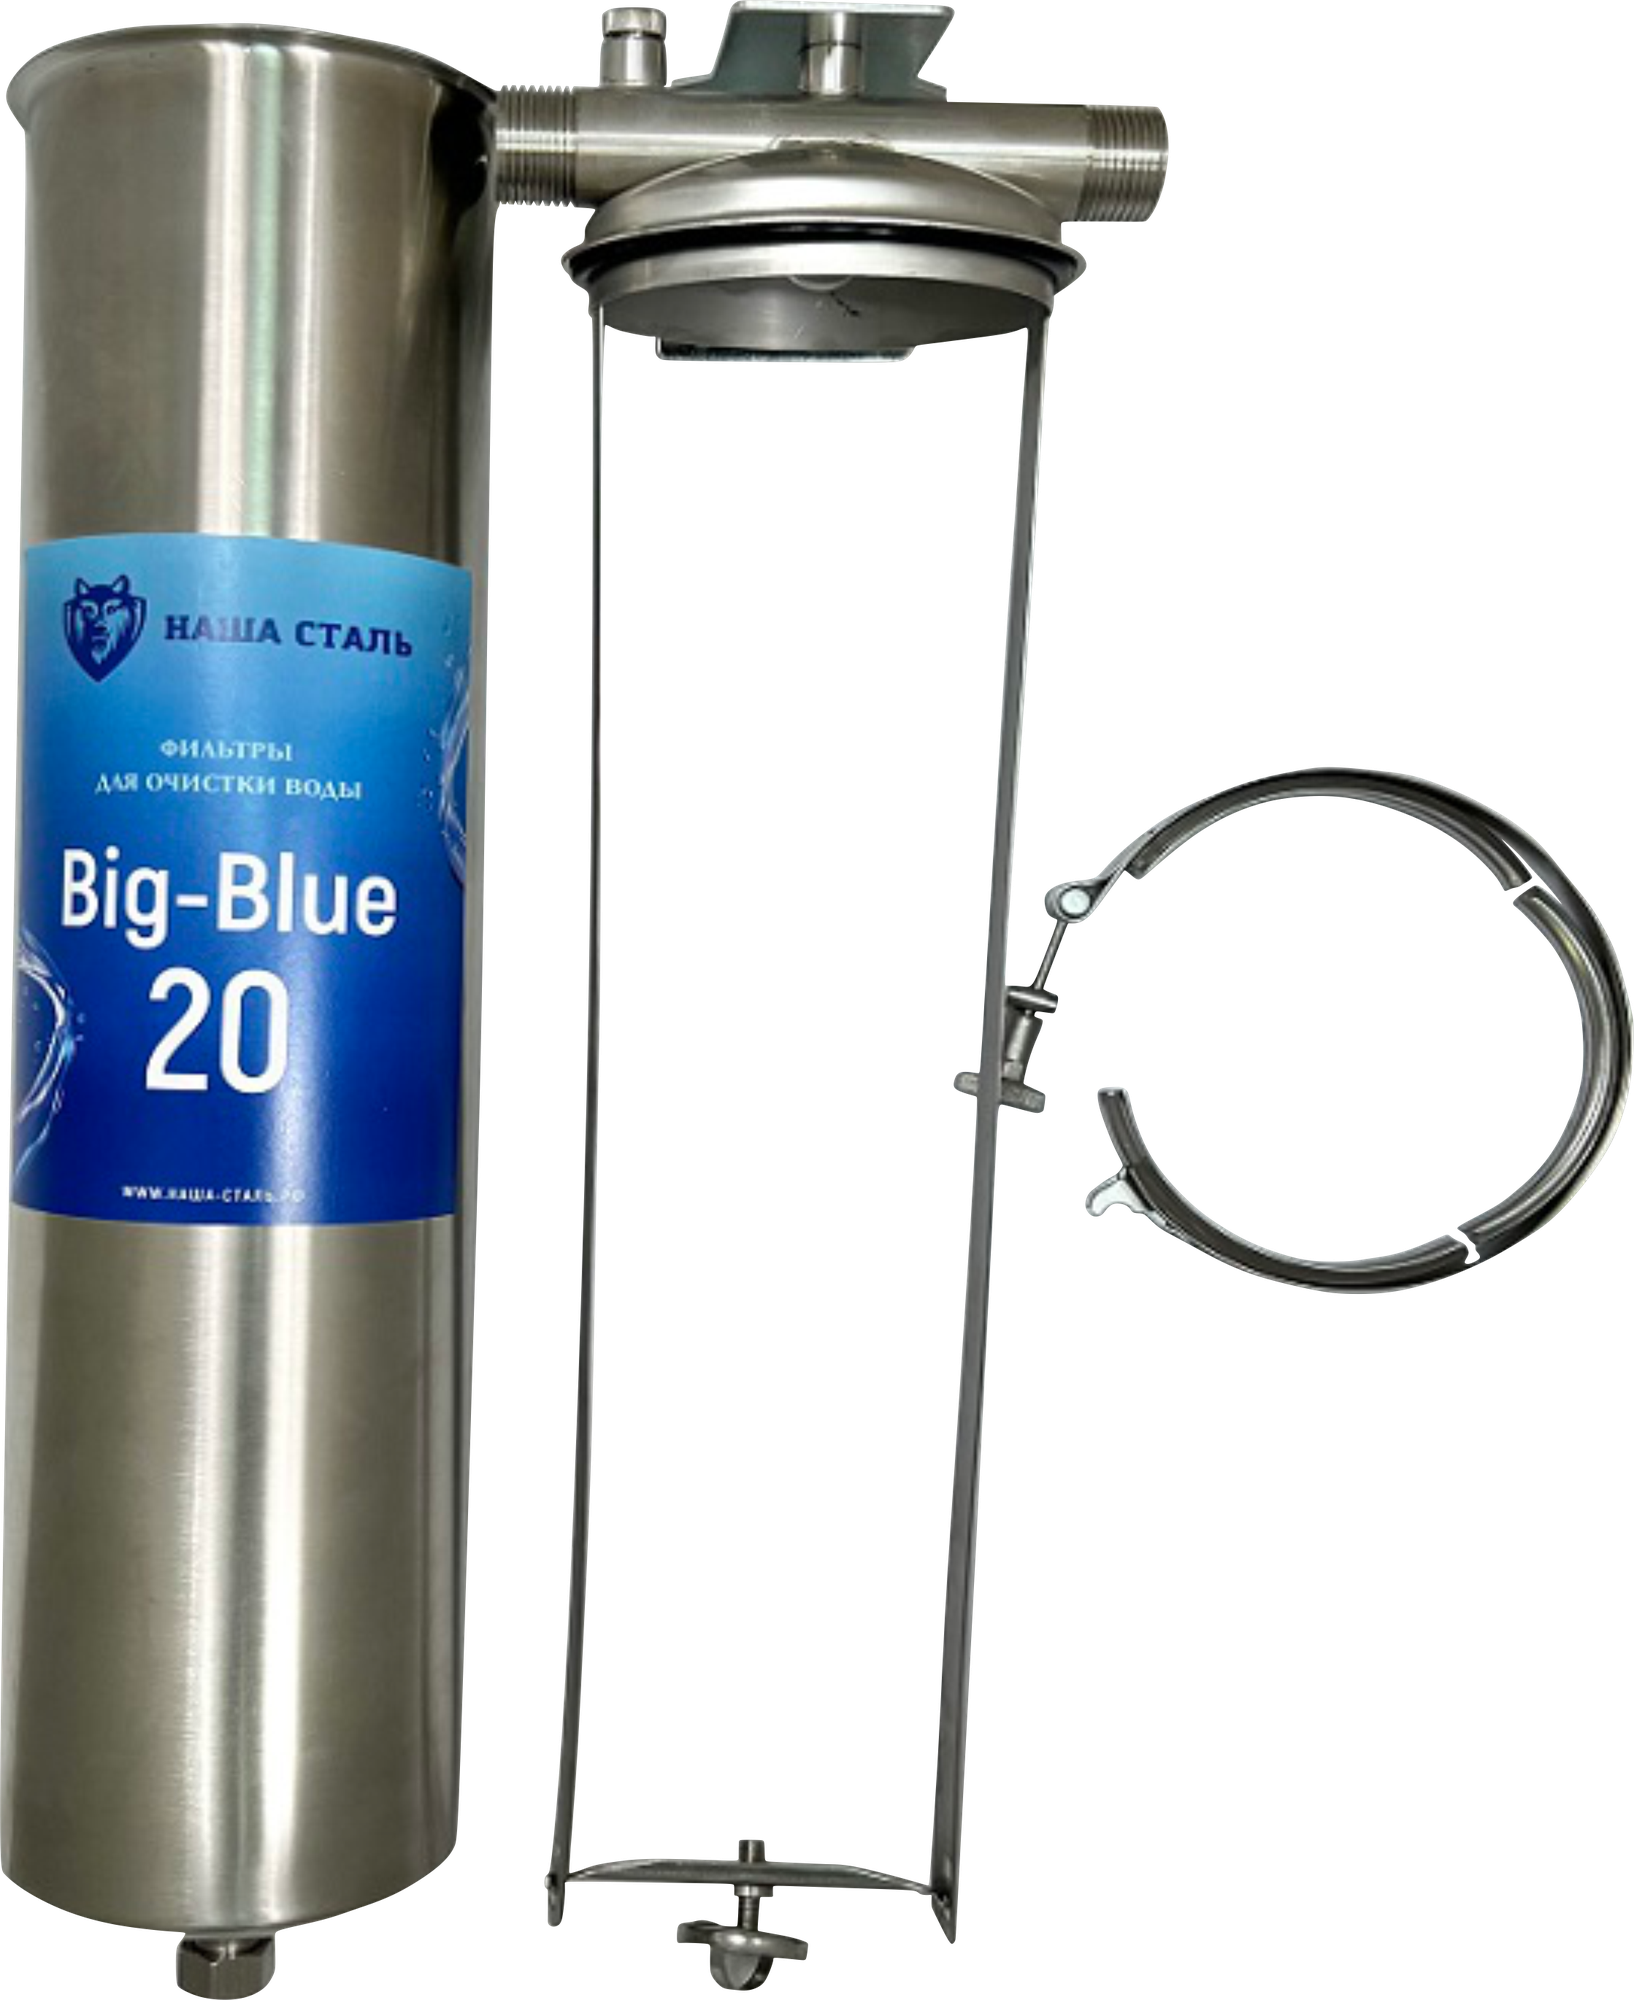 Магистральный фильтр для холодной и горячей воды Big Blue 20 из нержавеющей стали наша сталь - для дома, дачи, квартиры, 1 дюйм - фотография № 11